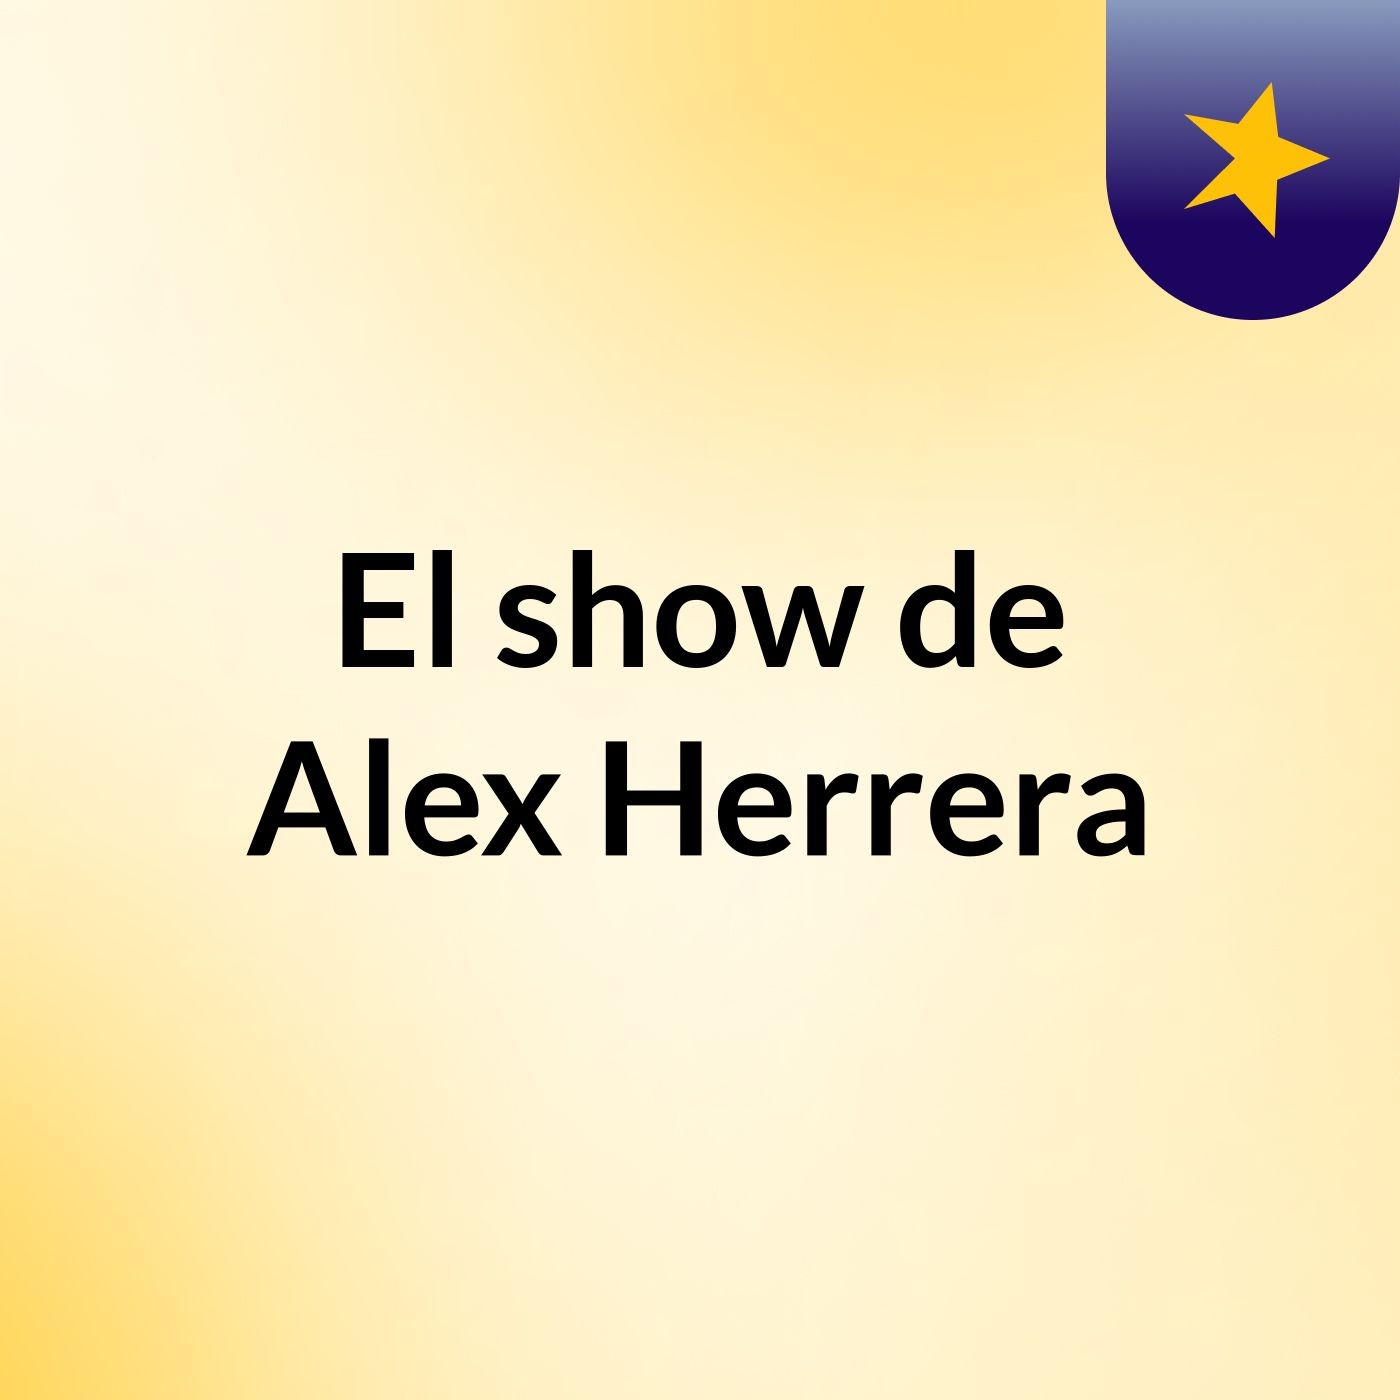 El show de Alex Herrera